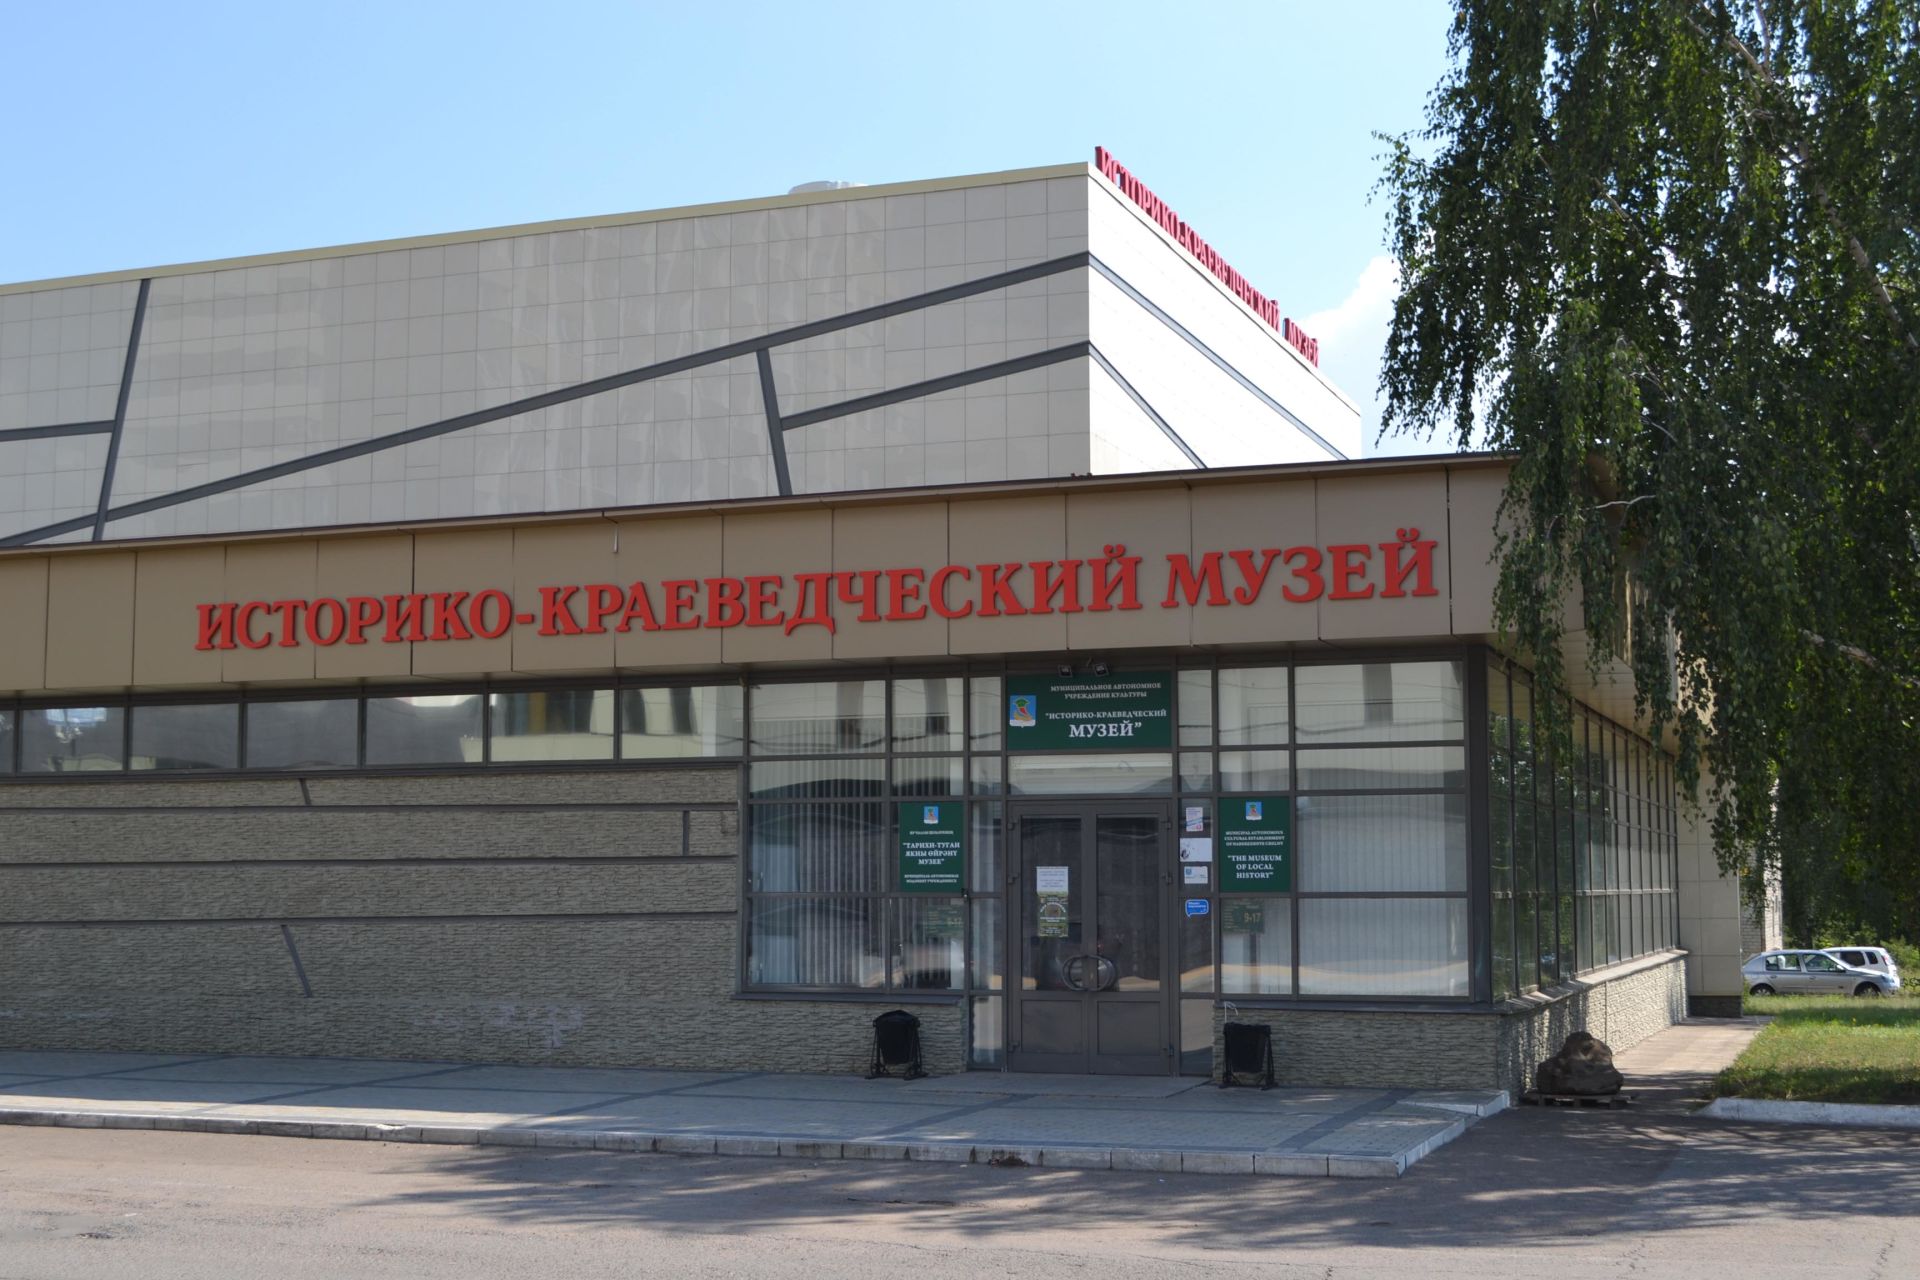 Историко-краеведческий музей г. Набережные Челны